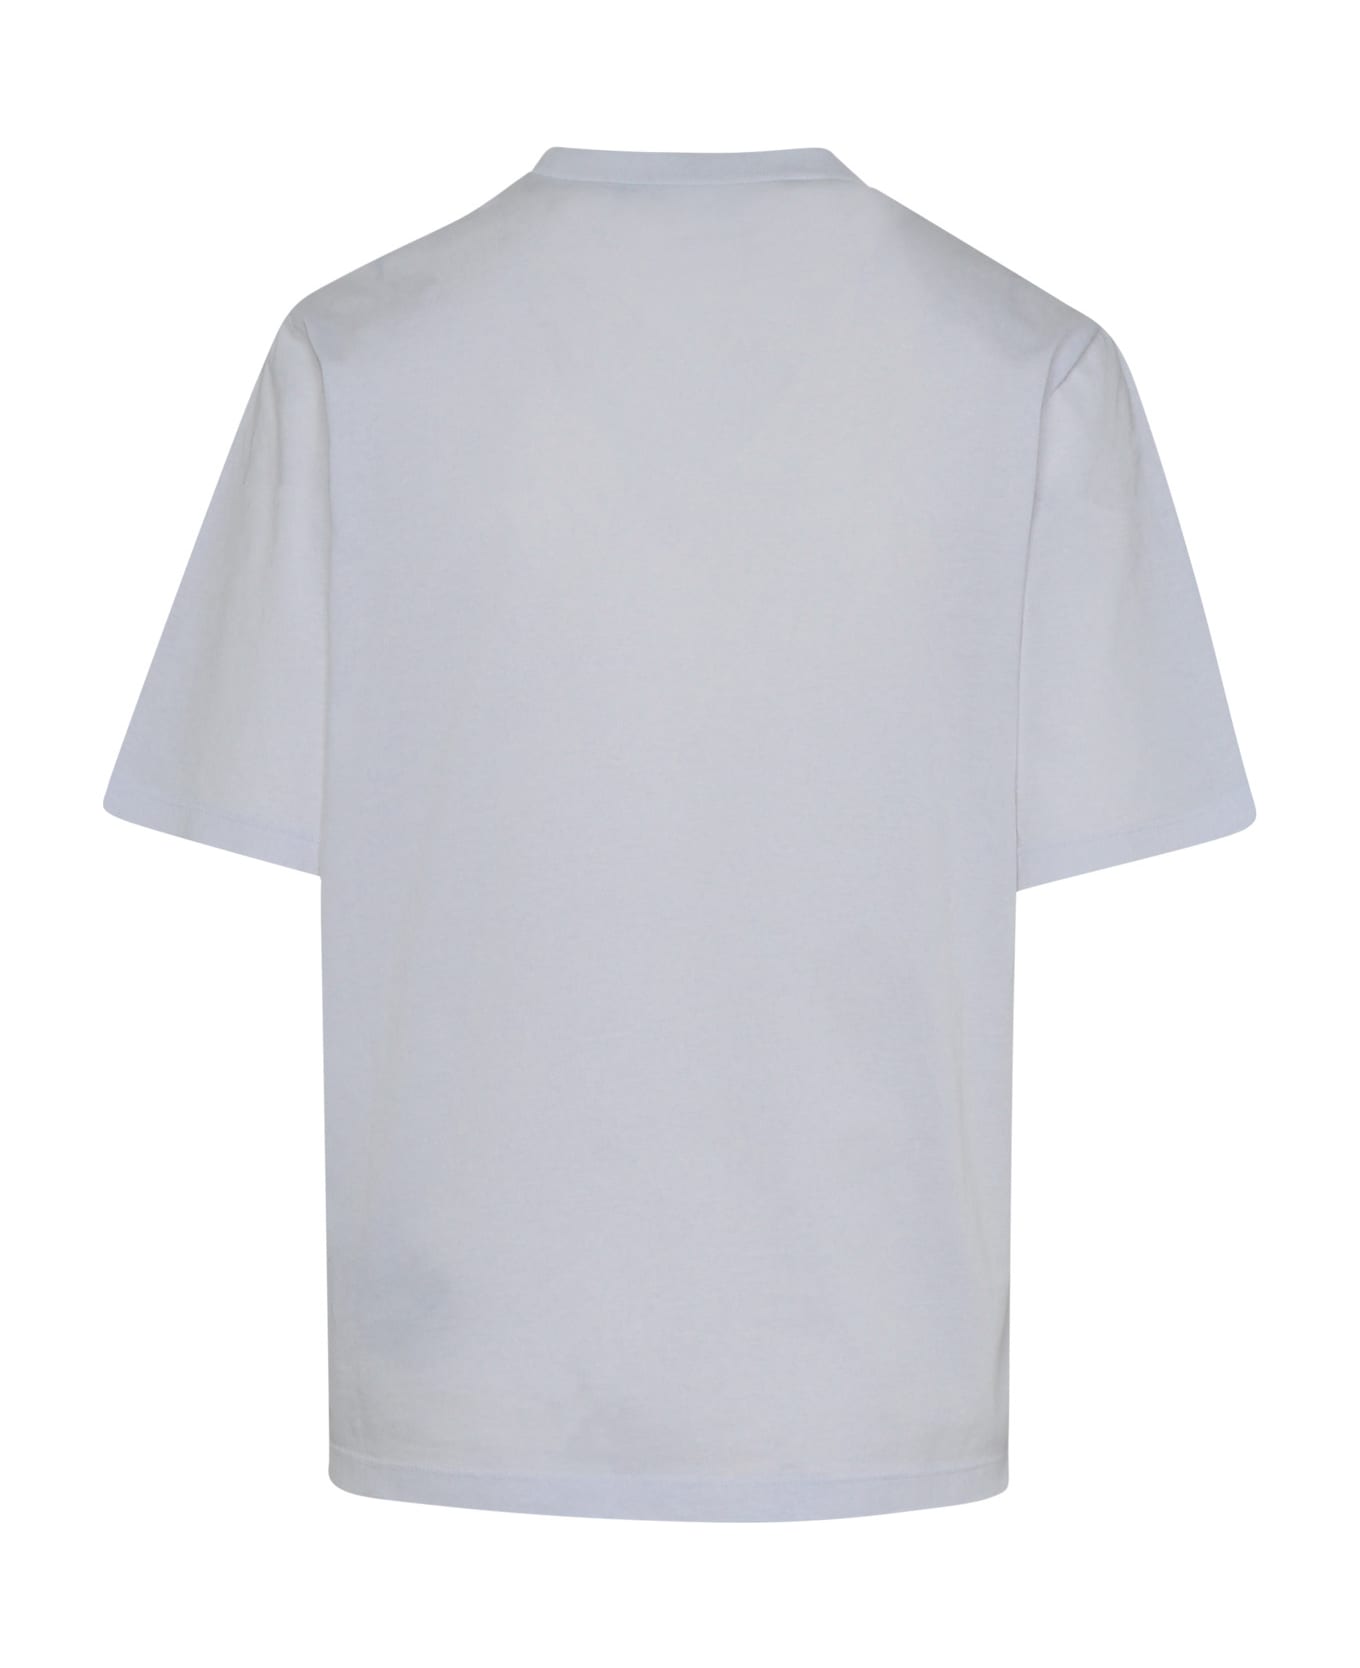 Dsquared2 White Cotton T-shirt - White